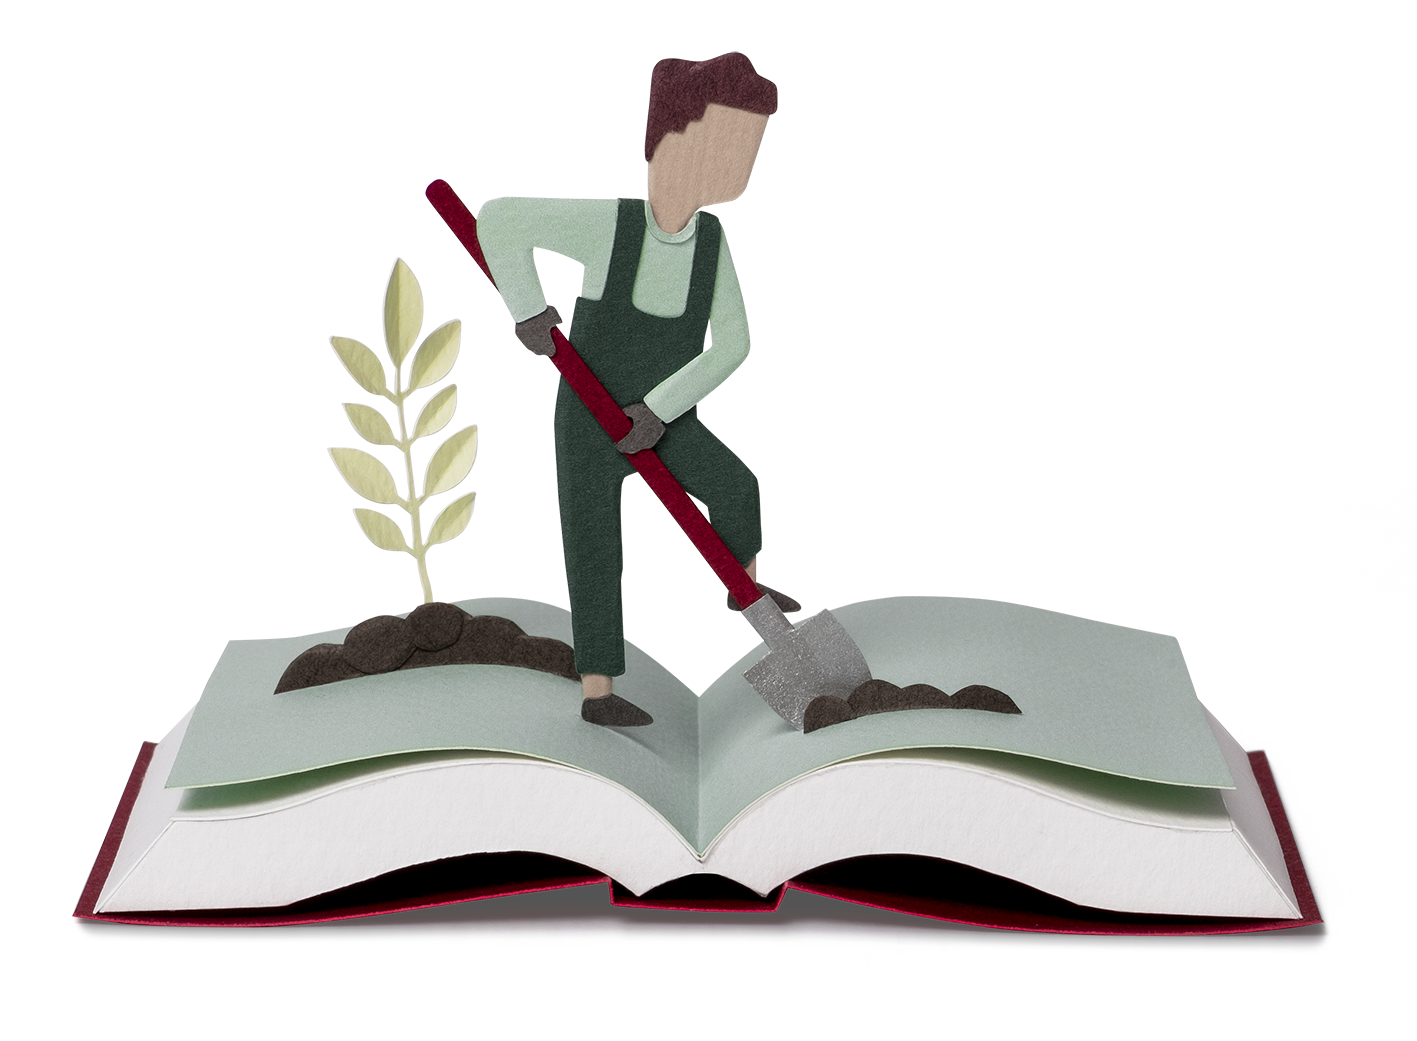 Ein animiertes, aufgeschlagenes Buch, in das eine Person mit einem Spaten Gartenarbeit verrichtet.